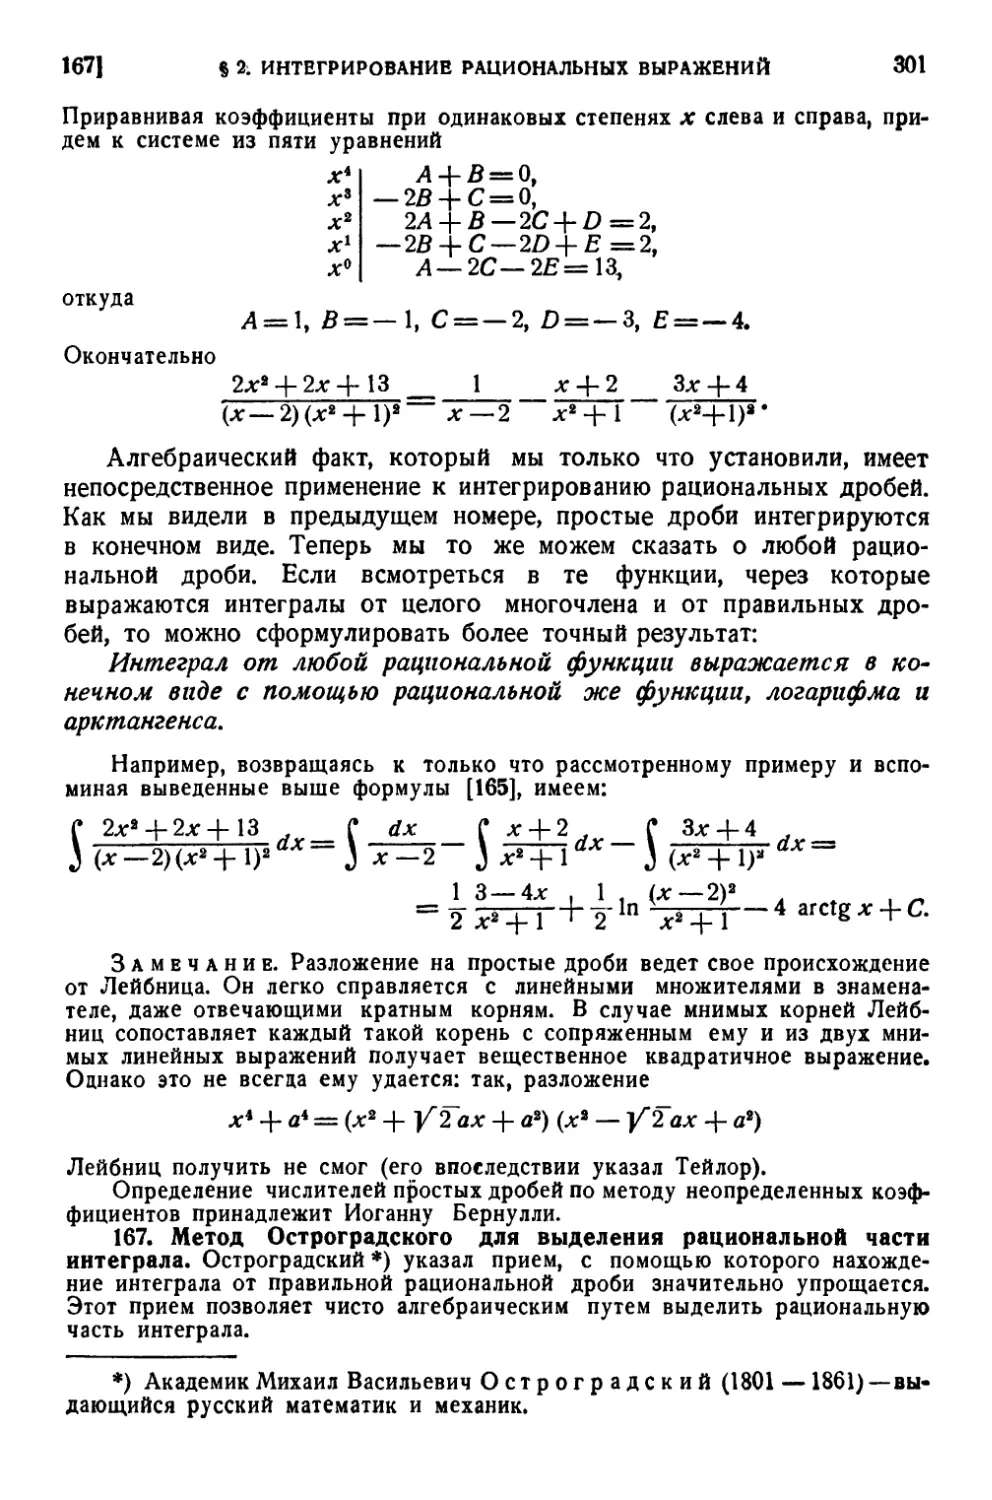 167. Метод Остроградского для выделения рациональной части интеграла